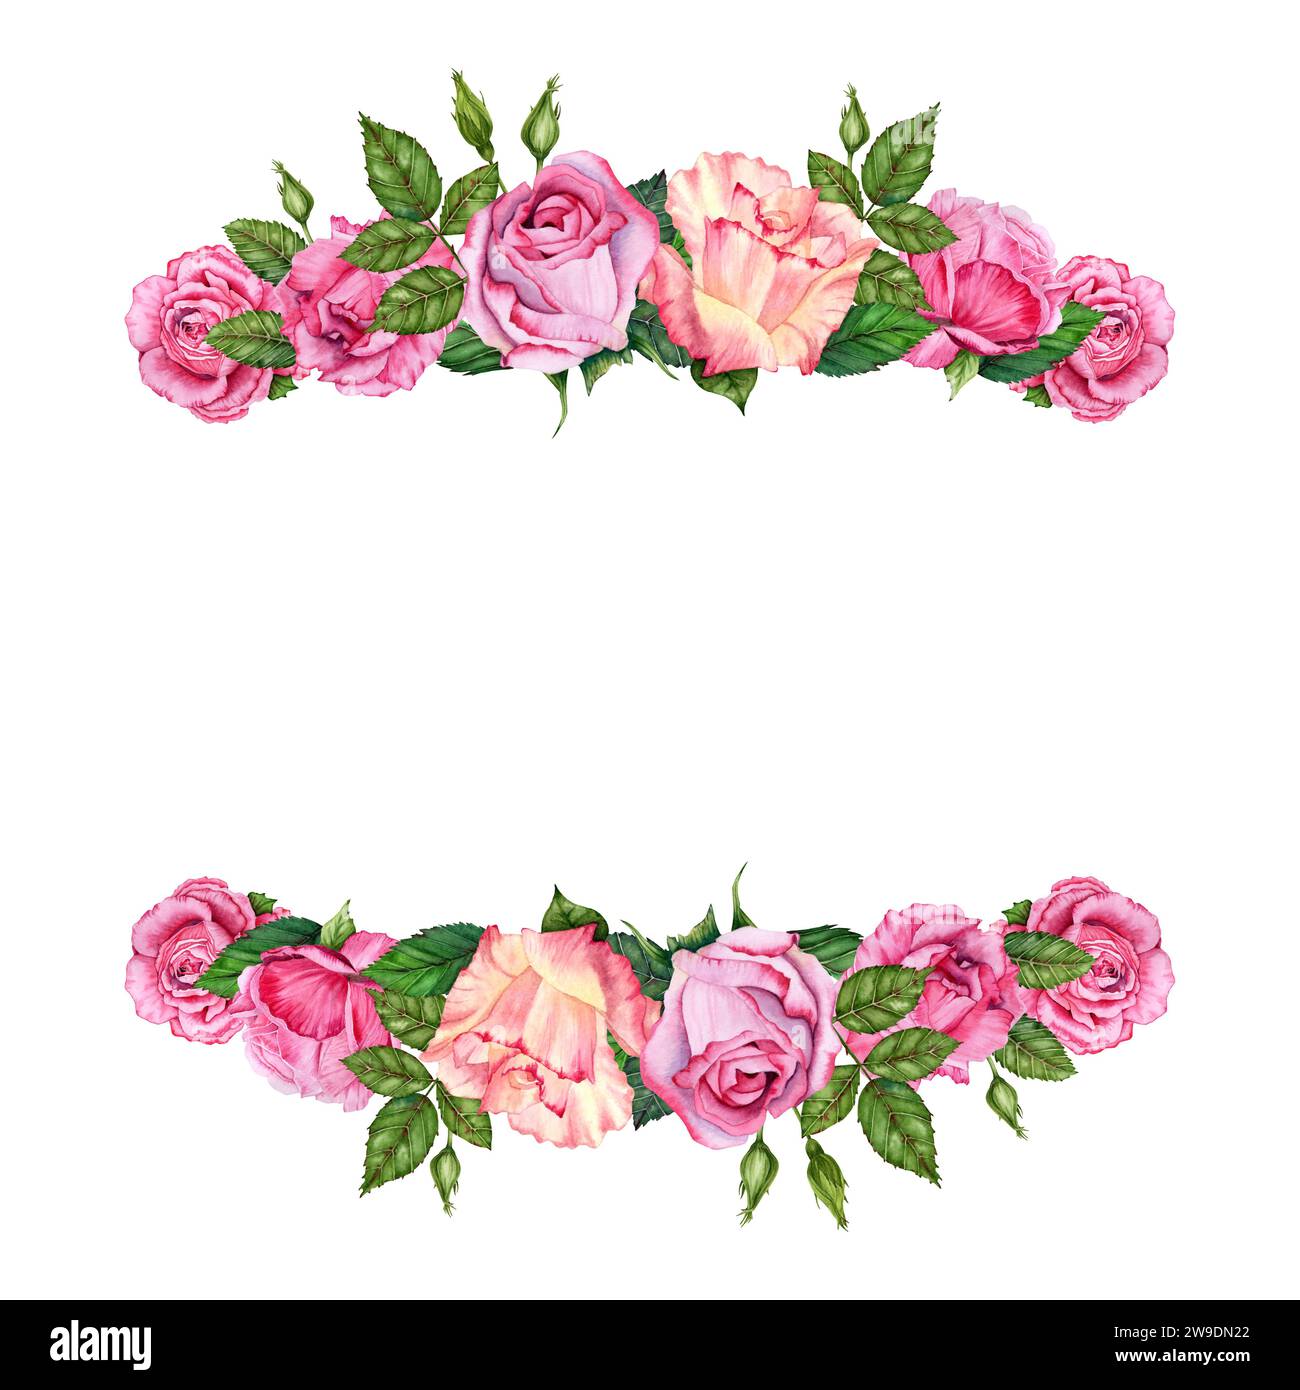 Cornice floreale con fiori di rosa, boccioli e foglie verdi. Illustrazione ad acquerello disegnata a mano isolata su sfondo bianco. Per San Valentino Foto Stock